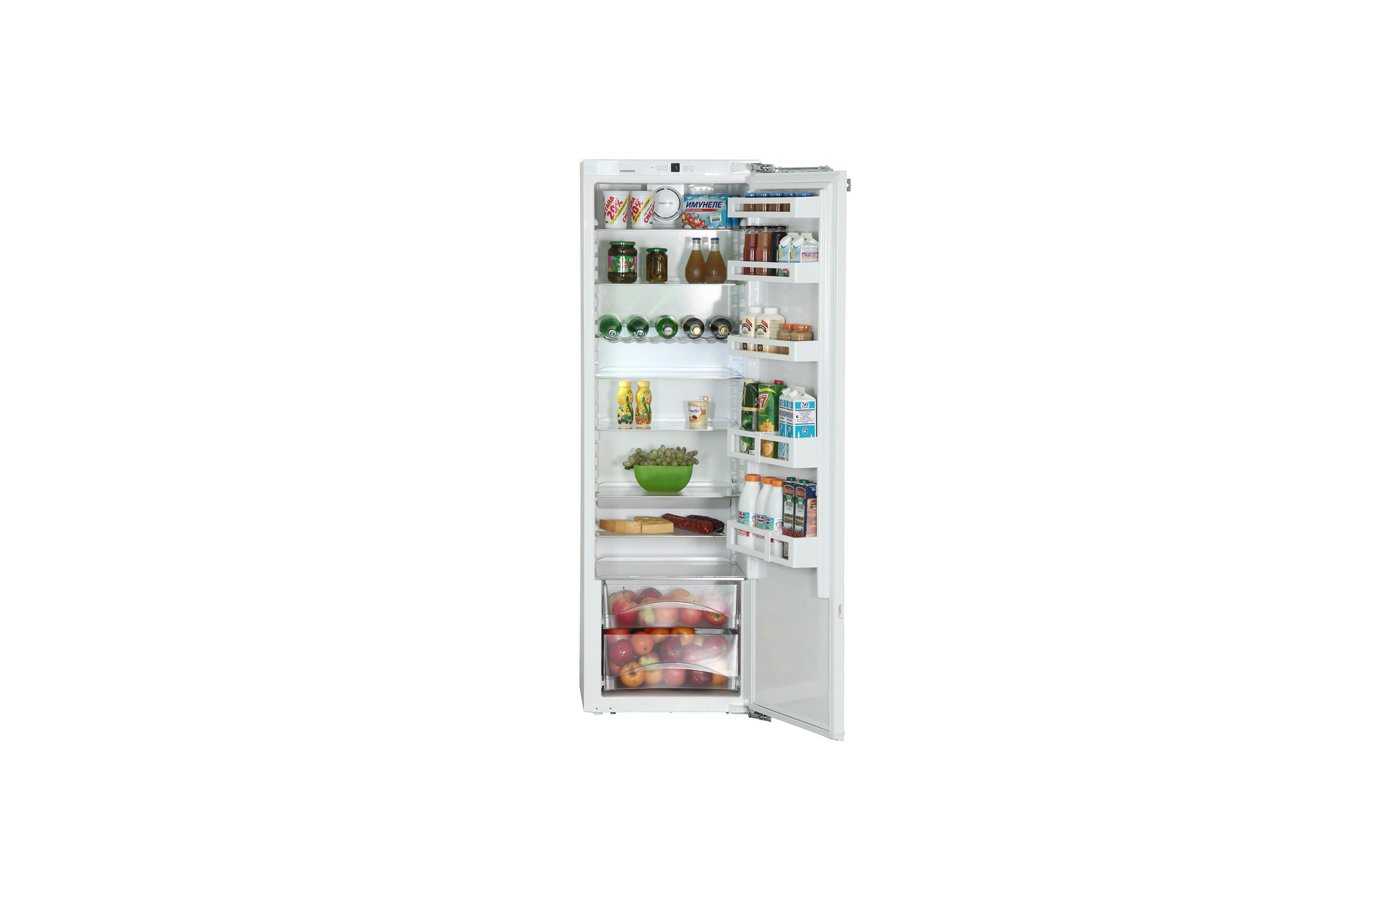 Ik 3520 comfort
встраиваемый холодильник